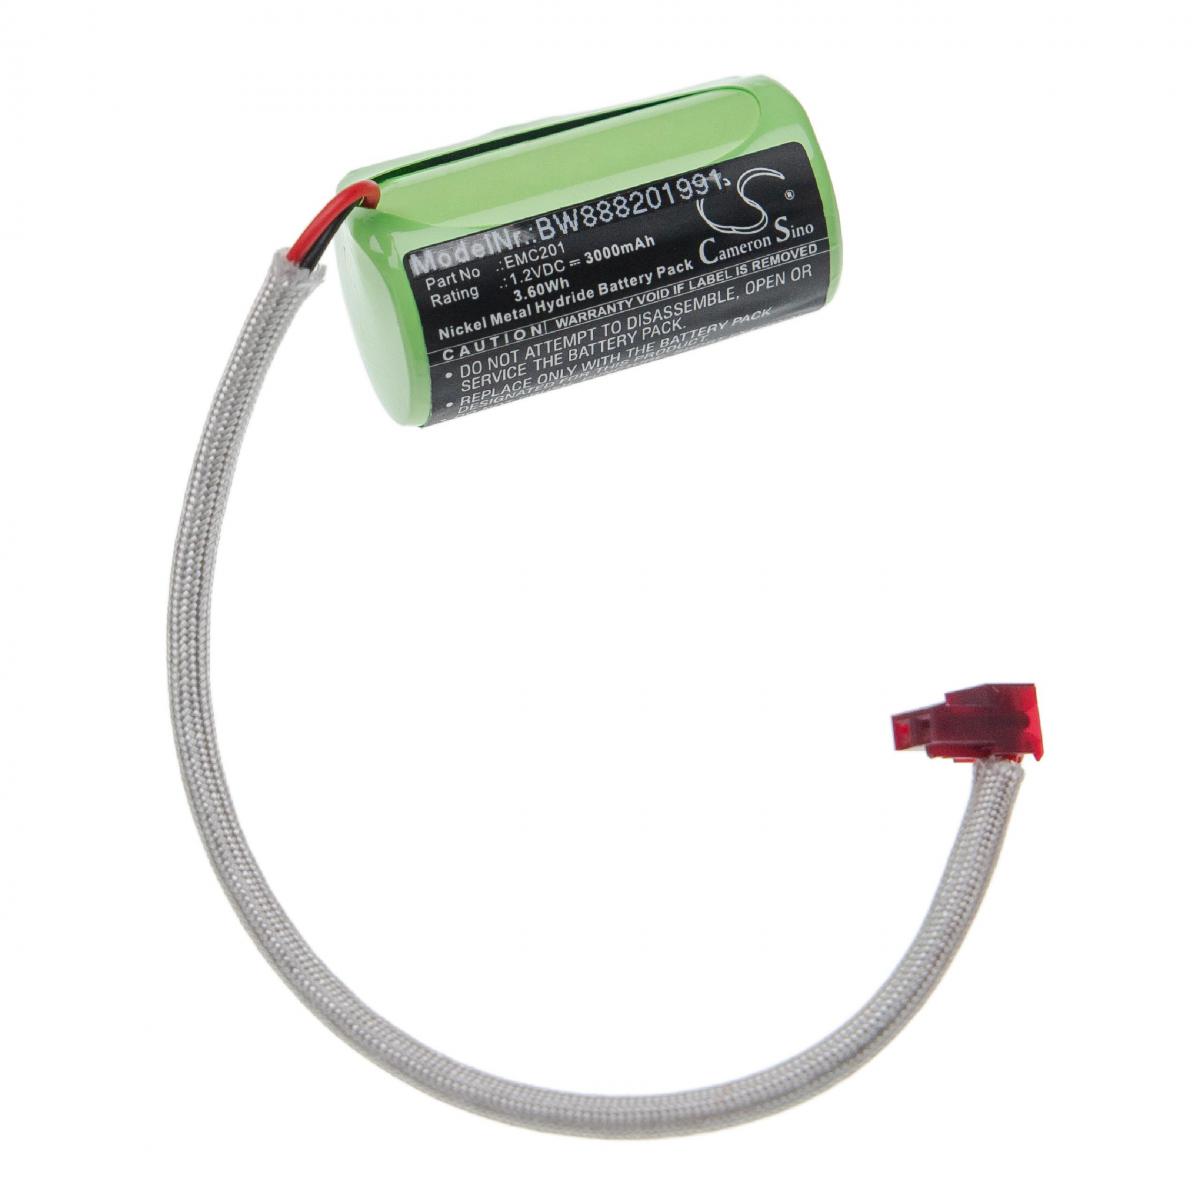 Vhbw - vhbw batterie remplacement pour Lithonia EMC201 pour issues/éclairage de secours (3000mAh, 1,2V, NiMH) - Autre appareil de mesure